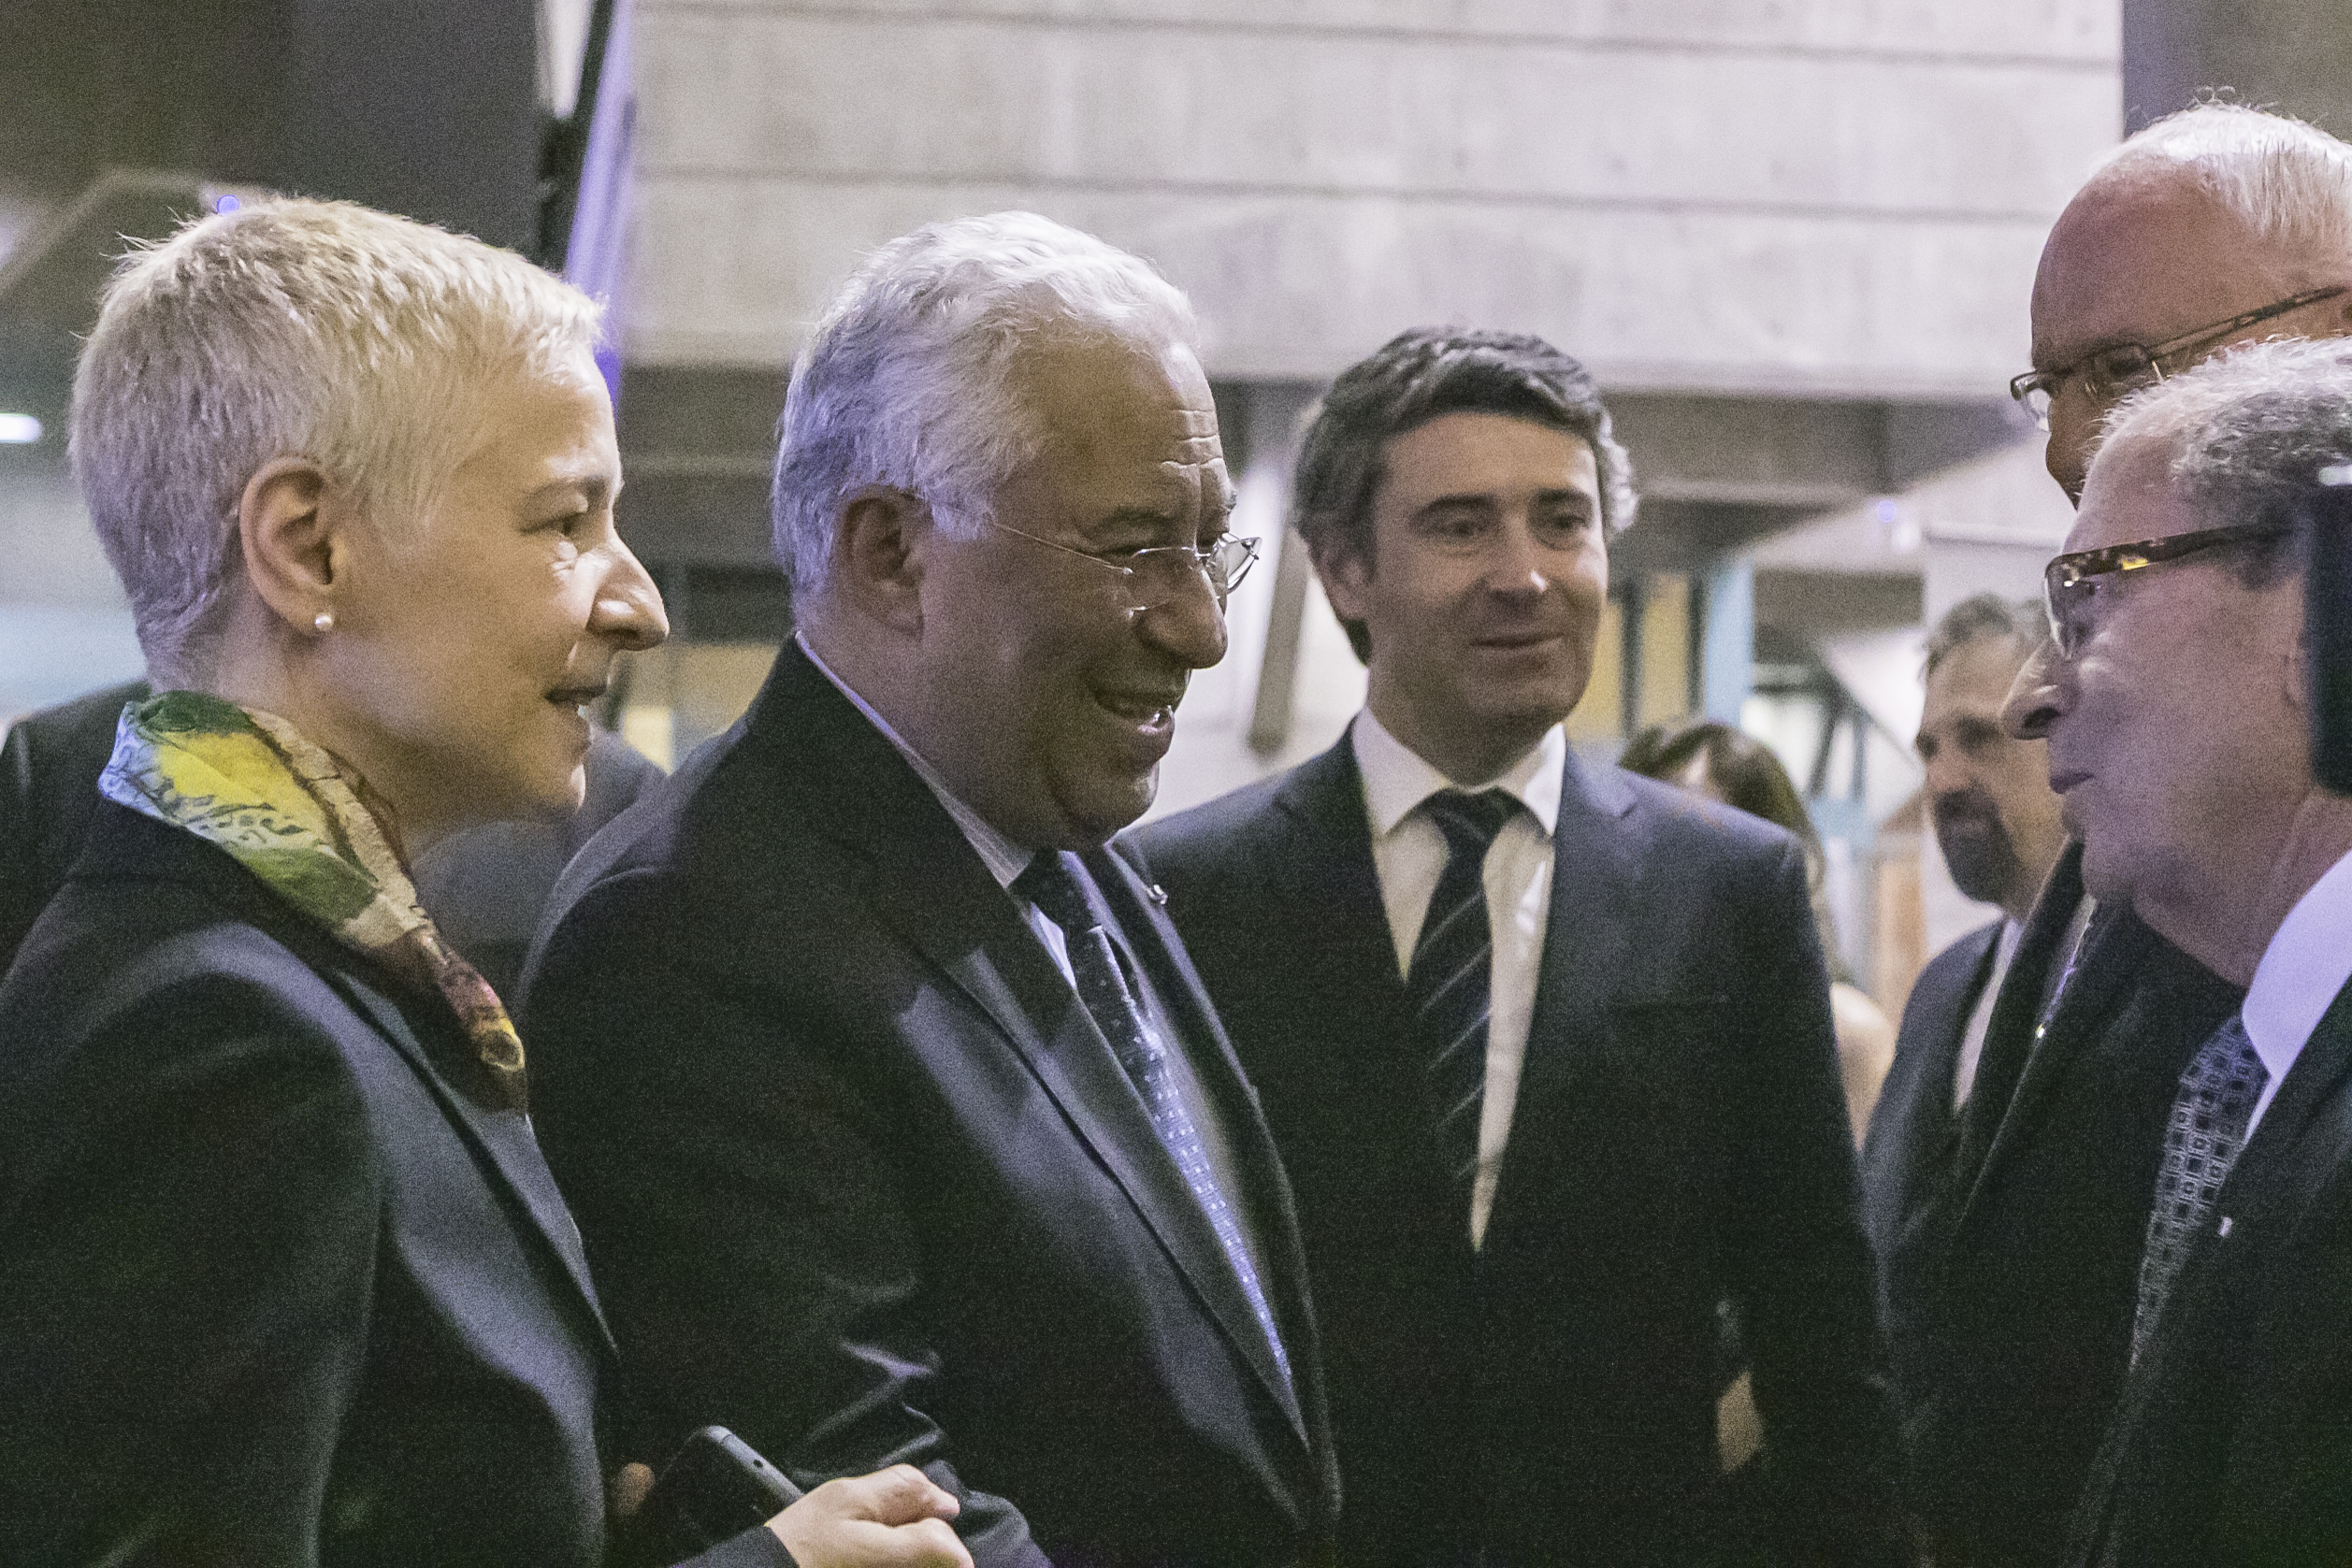 Event_2018 Portuguese Prime Minister Reception9991